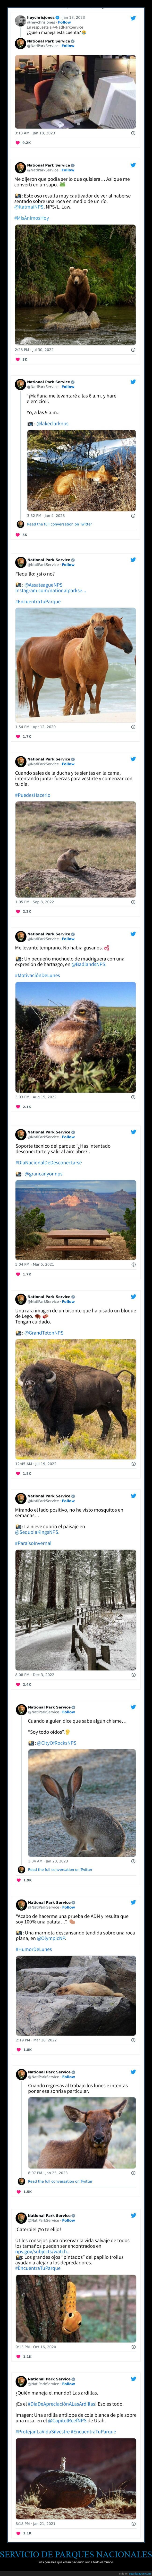 servicio de parques nacionales,tweets